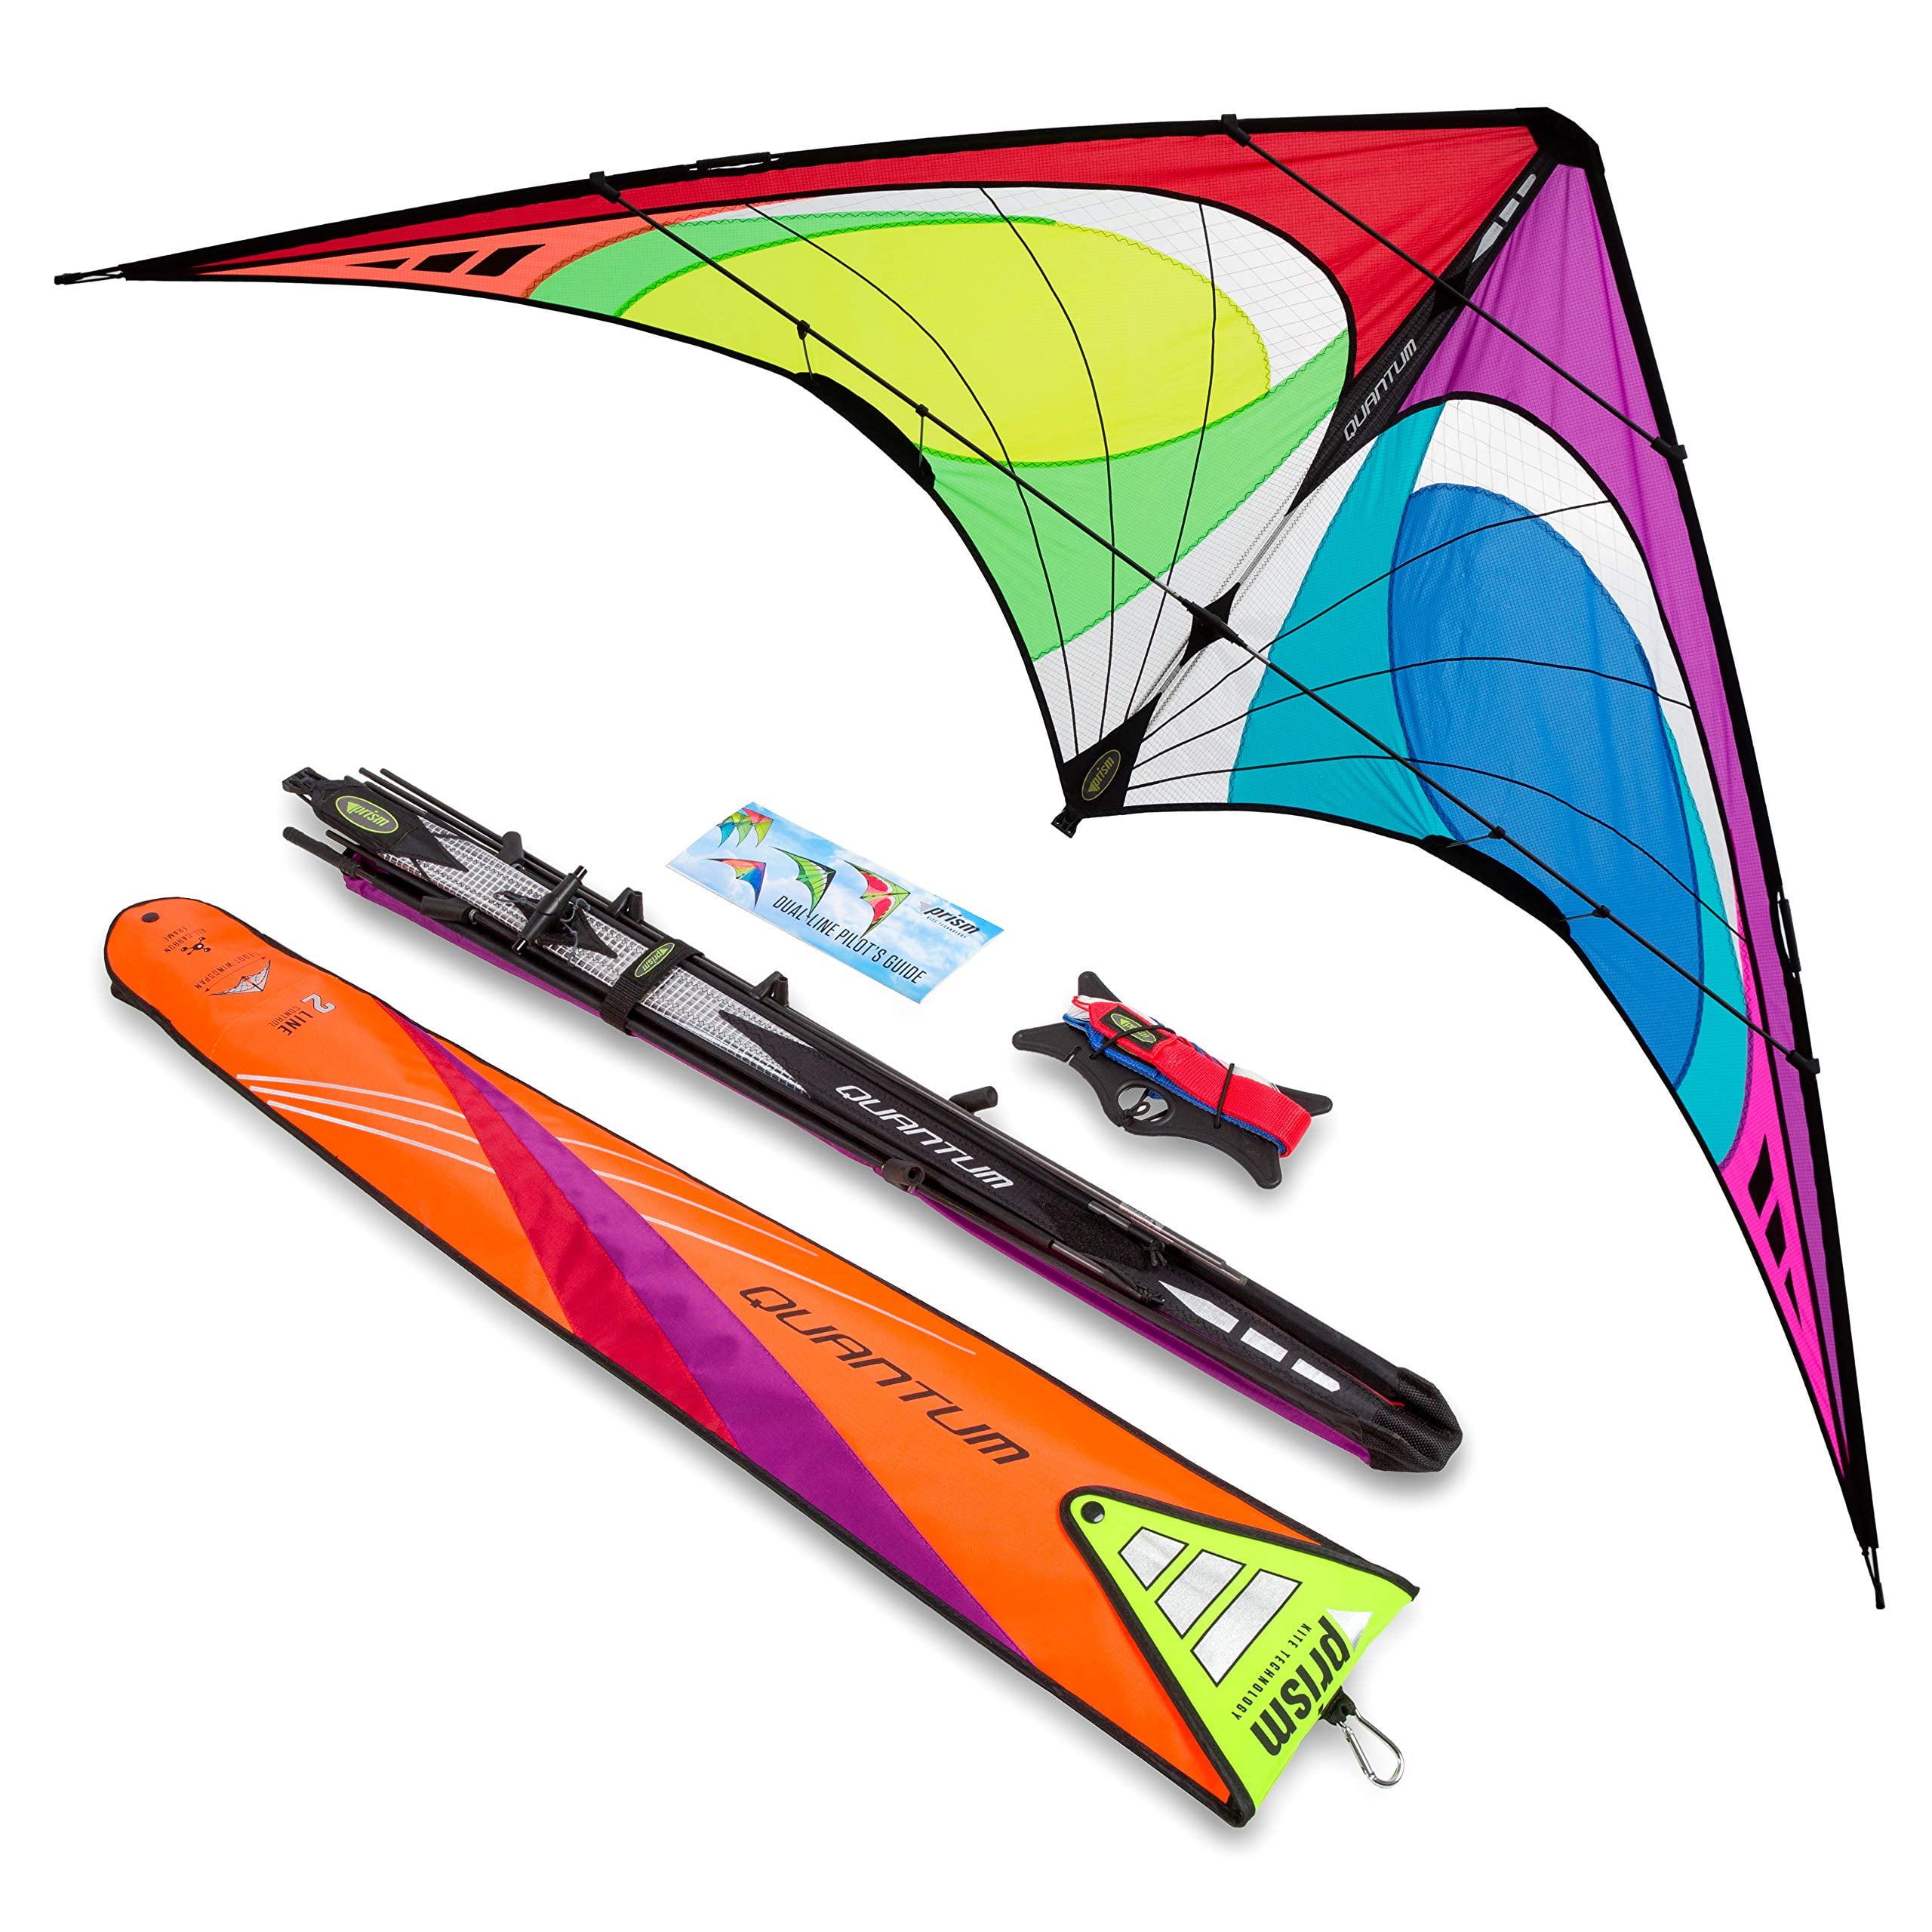 Beach Kite